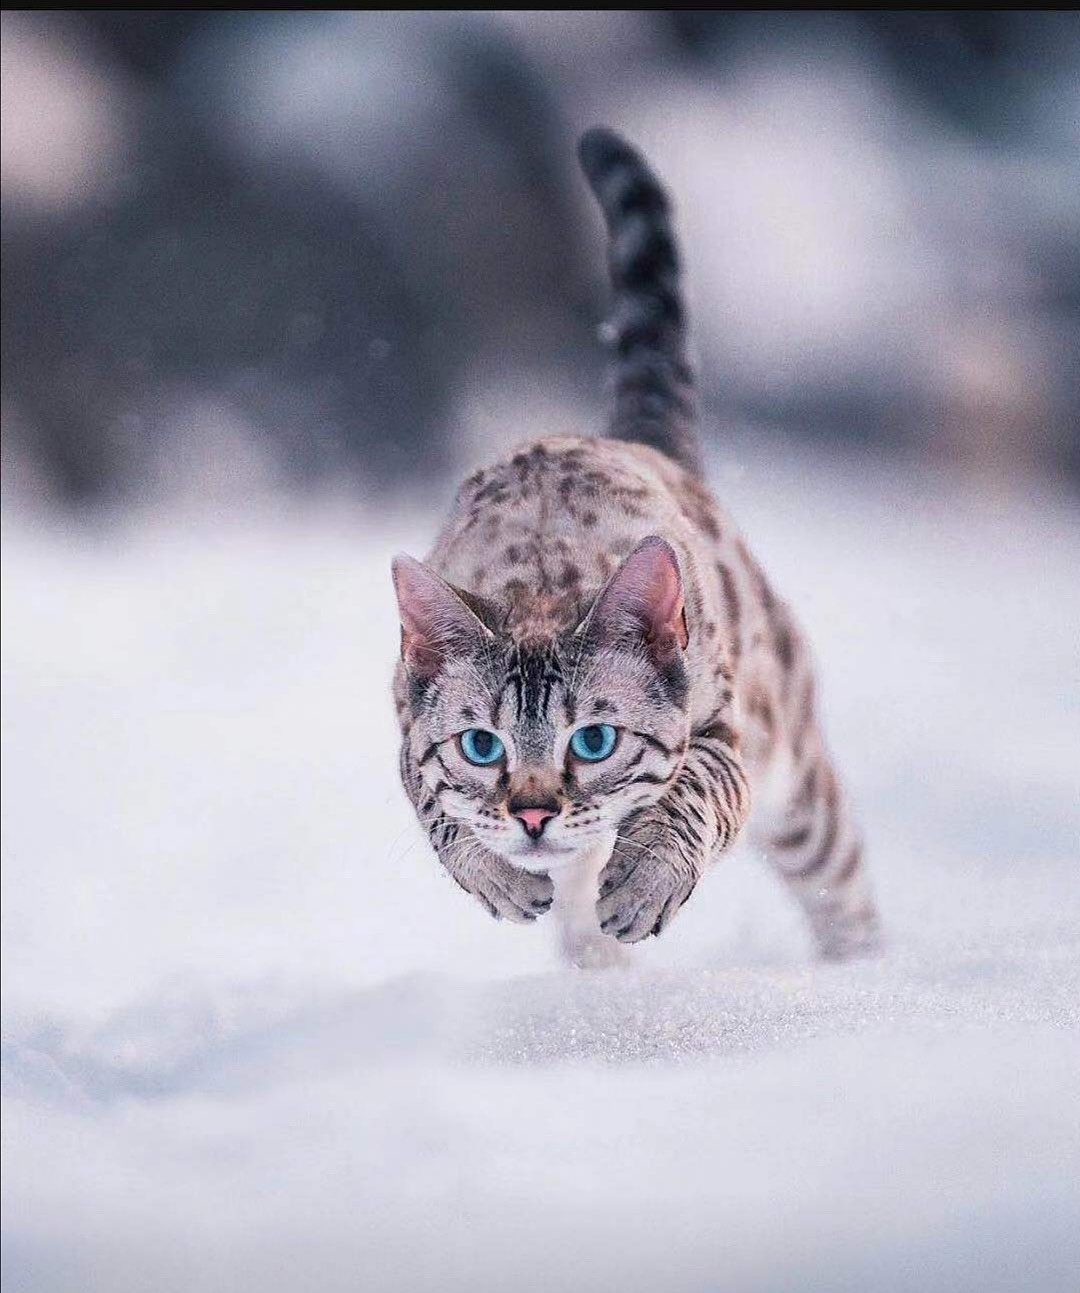 雪中的猫爪印 库存照片. 图片 包括有 季节, 宠物, 敌意, 脚印, 按照, 宏指令, 模式, 爪子 - 194253238